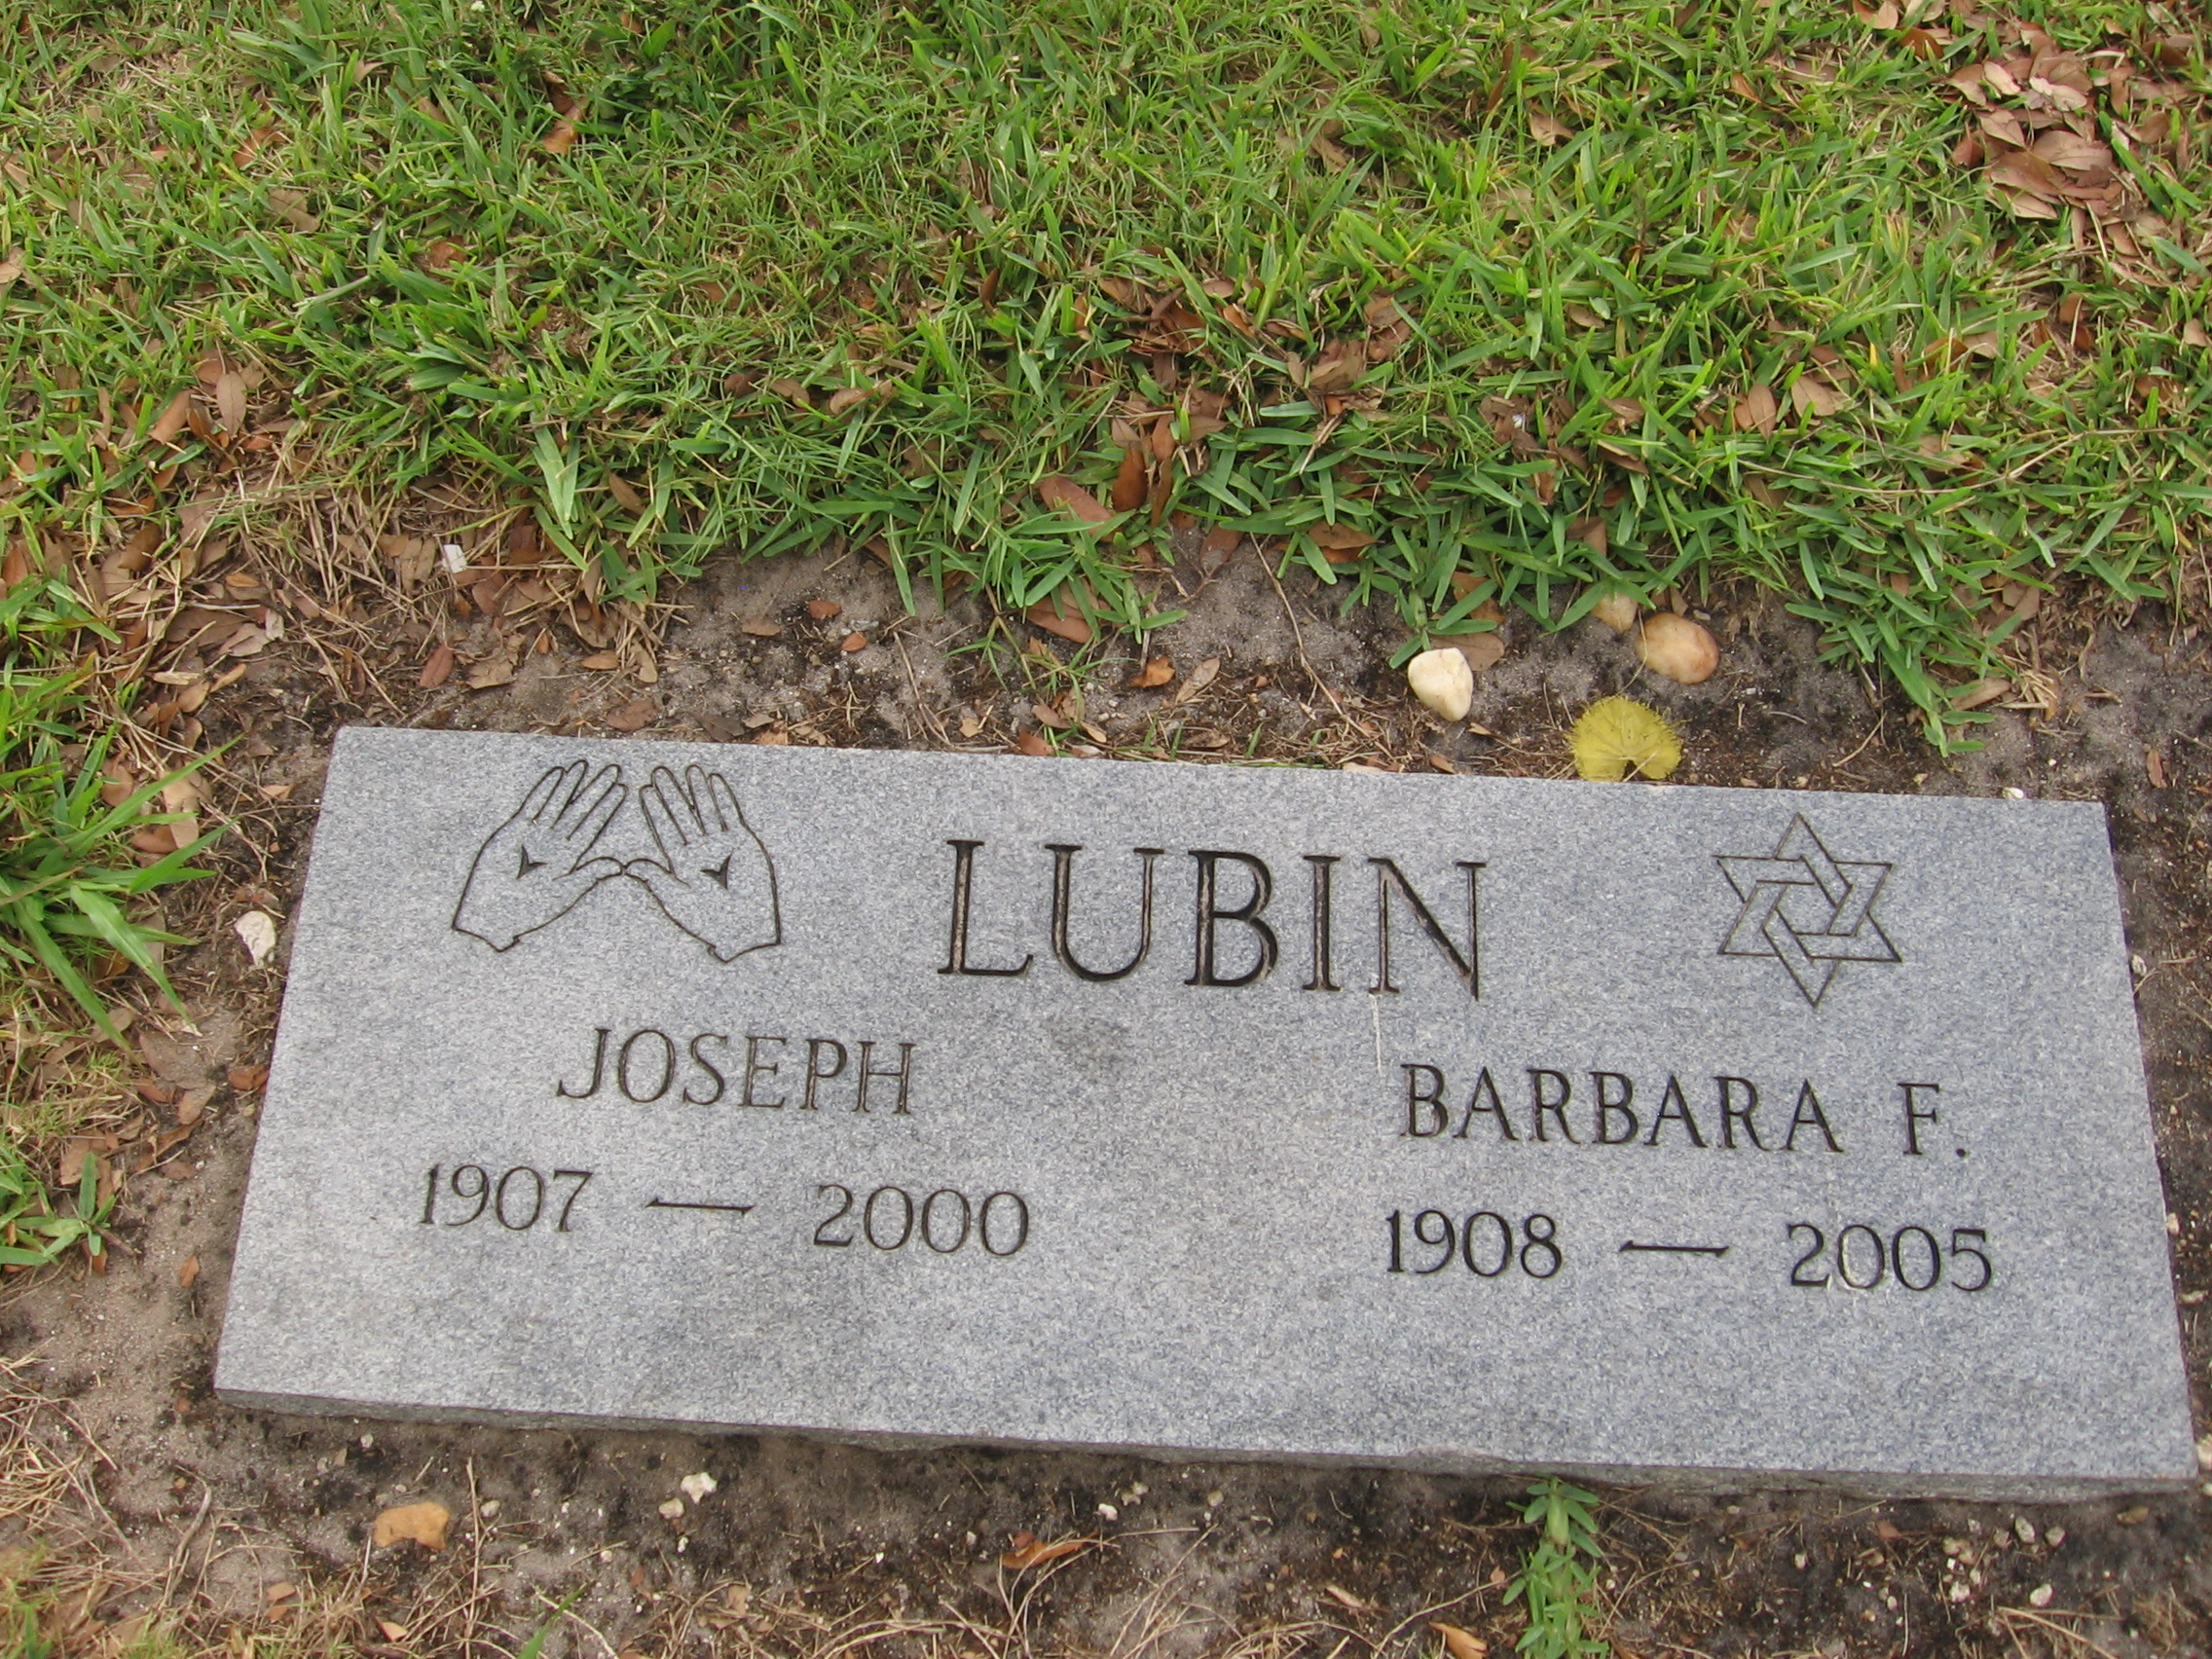 Barbara F Lubin